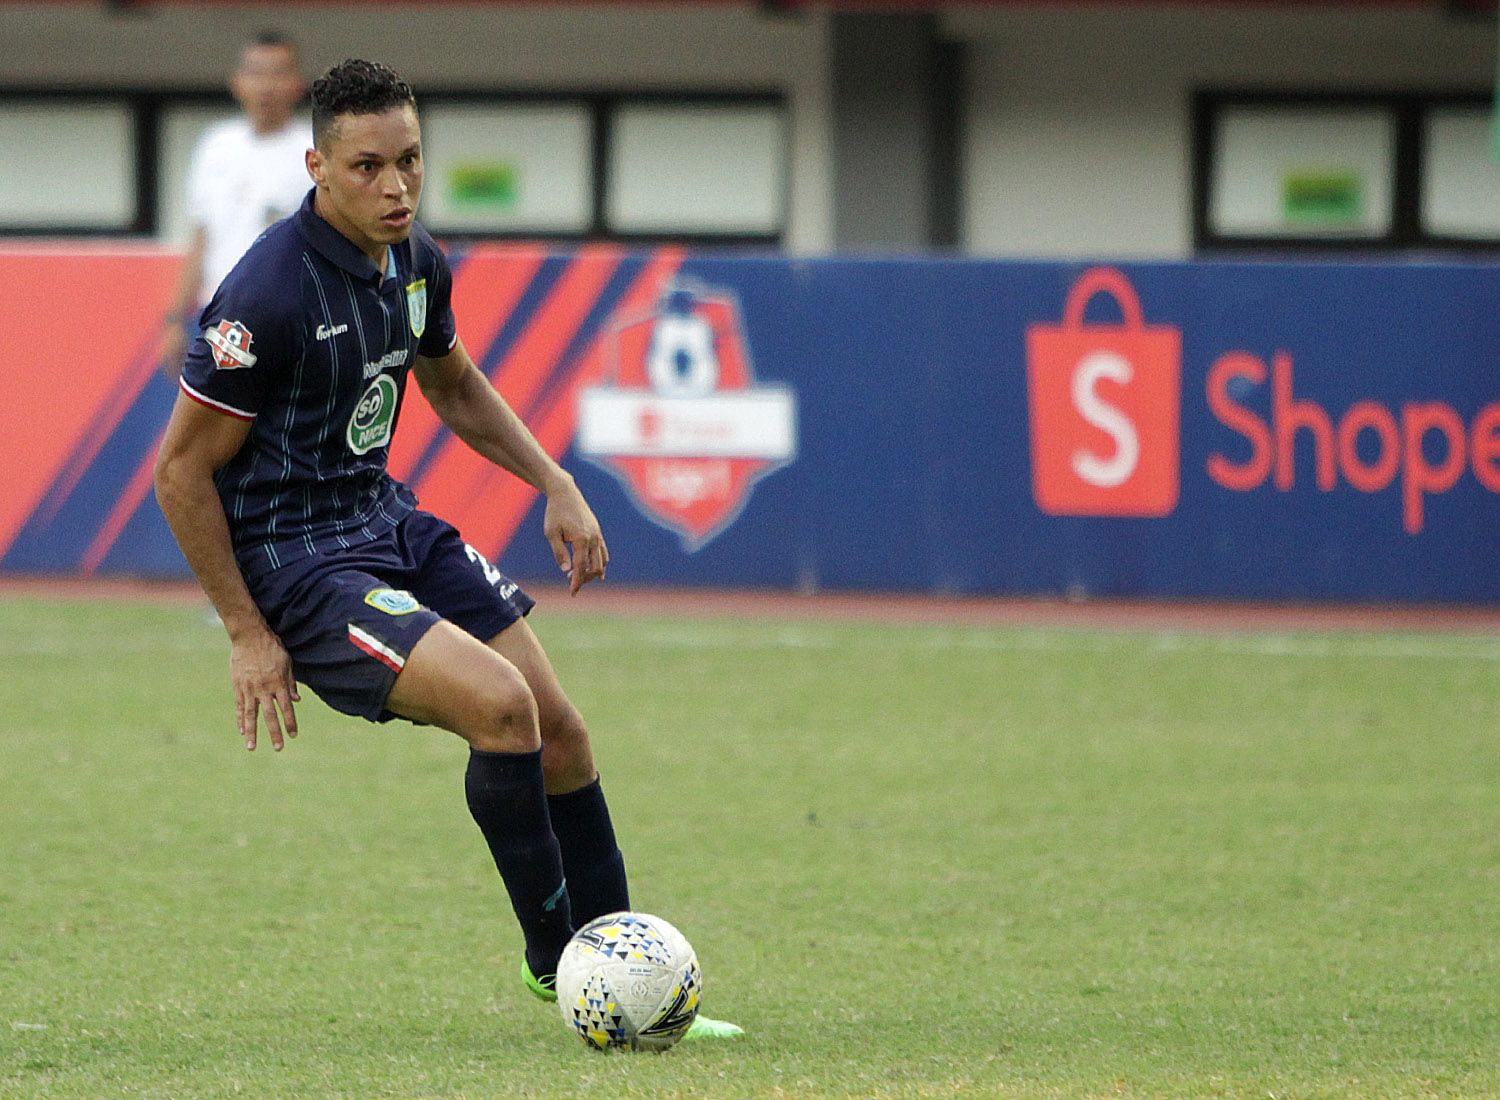 Pemain Persela, Rafael Gomes de Oliveira, beraksi dalam sebuah pertandingan Liga 1 2019. Ia akan absen saat melawan Borneo FC pada 13 Maret 2020 karena kartu merah.